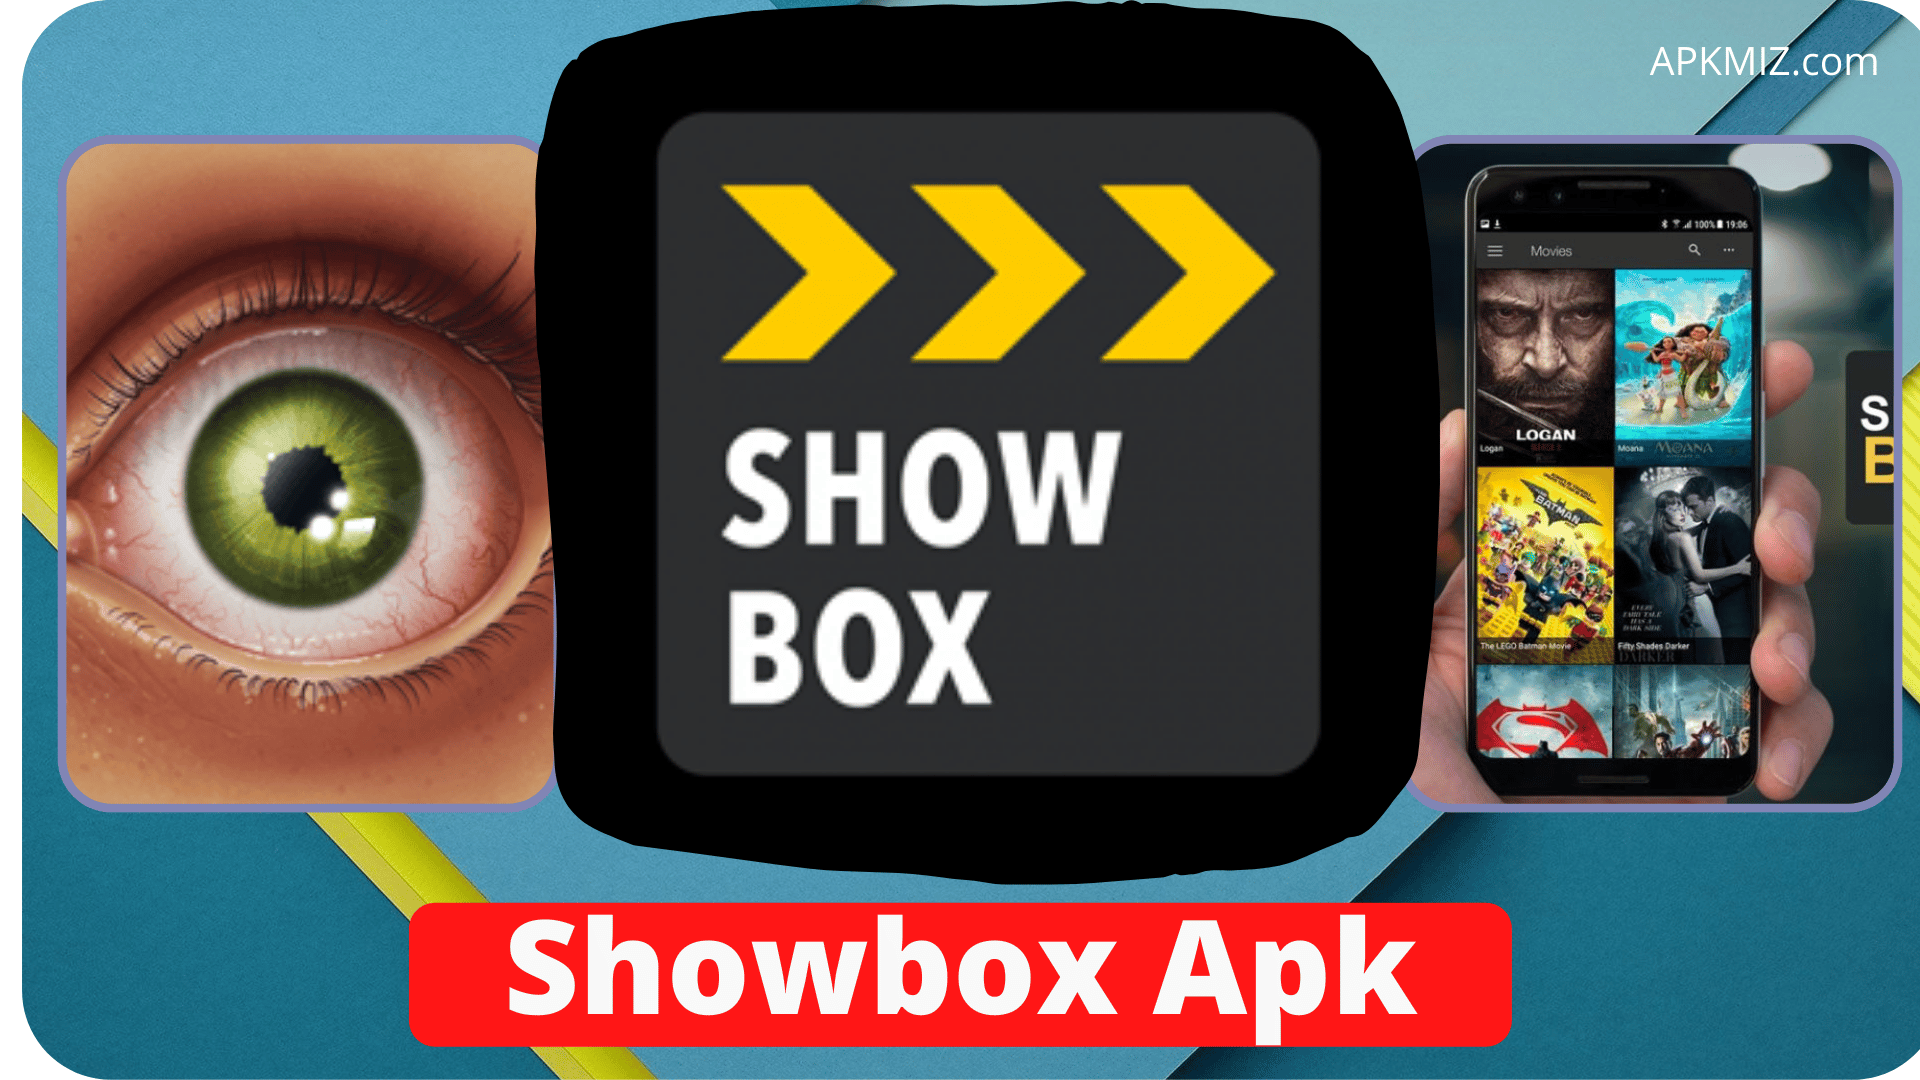 Showbox Apk